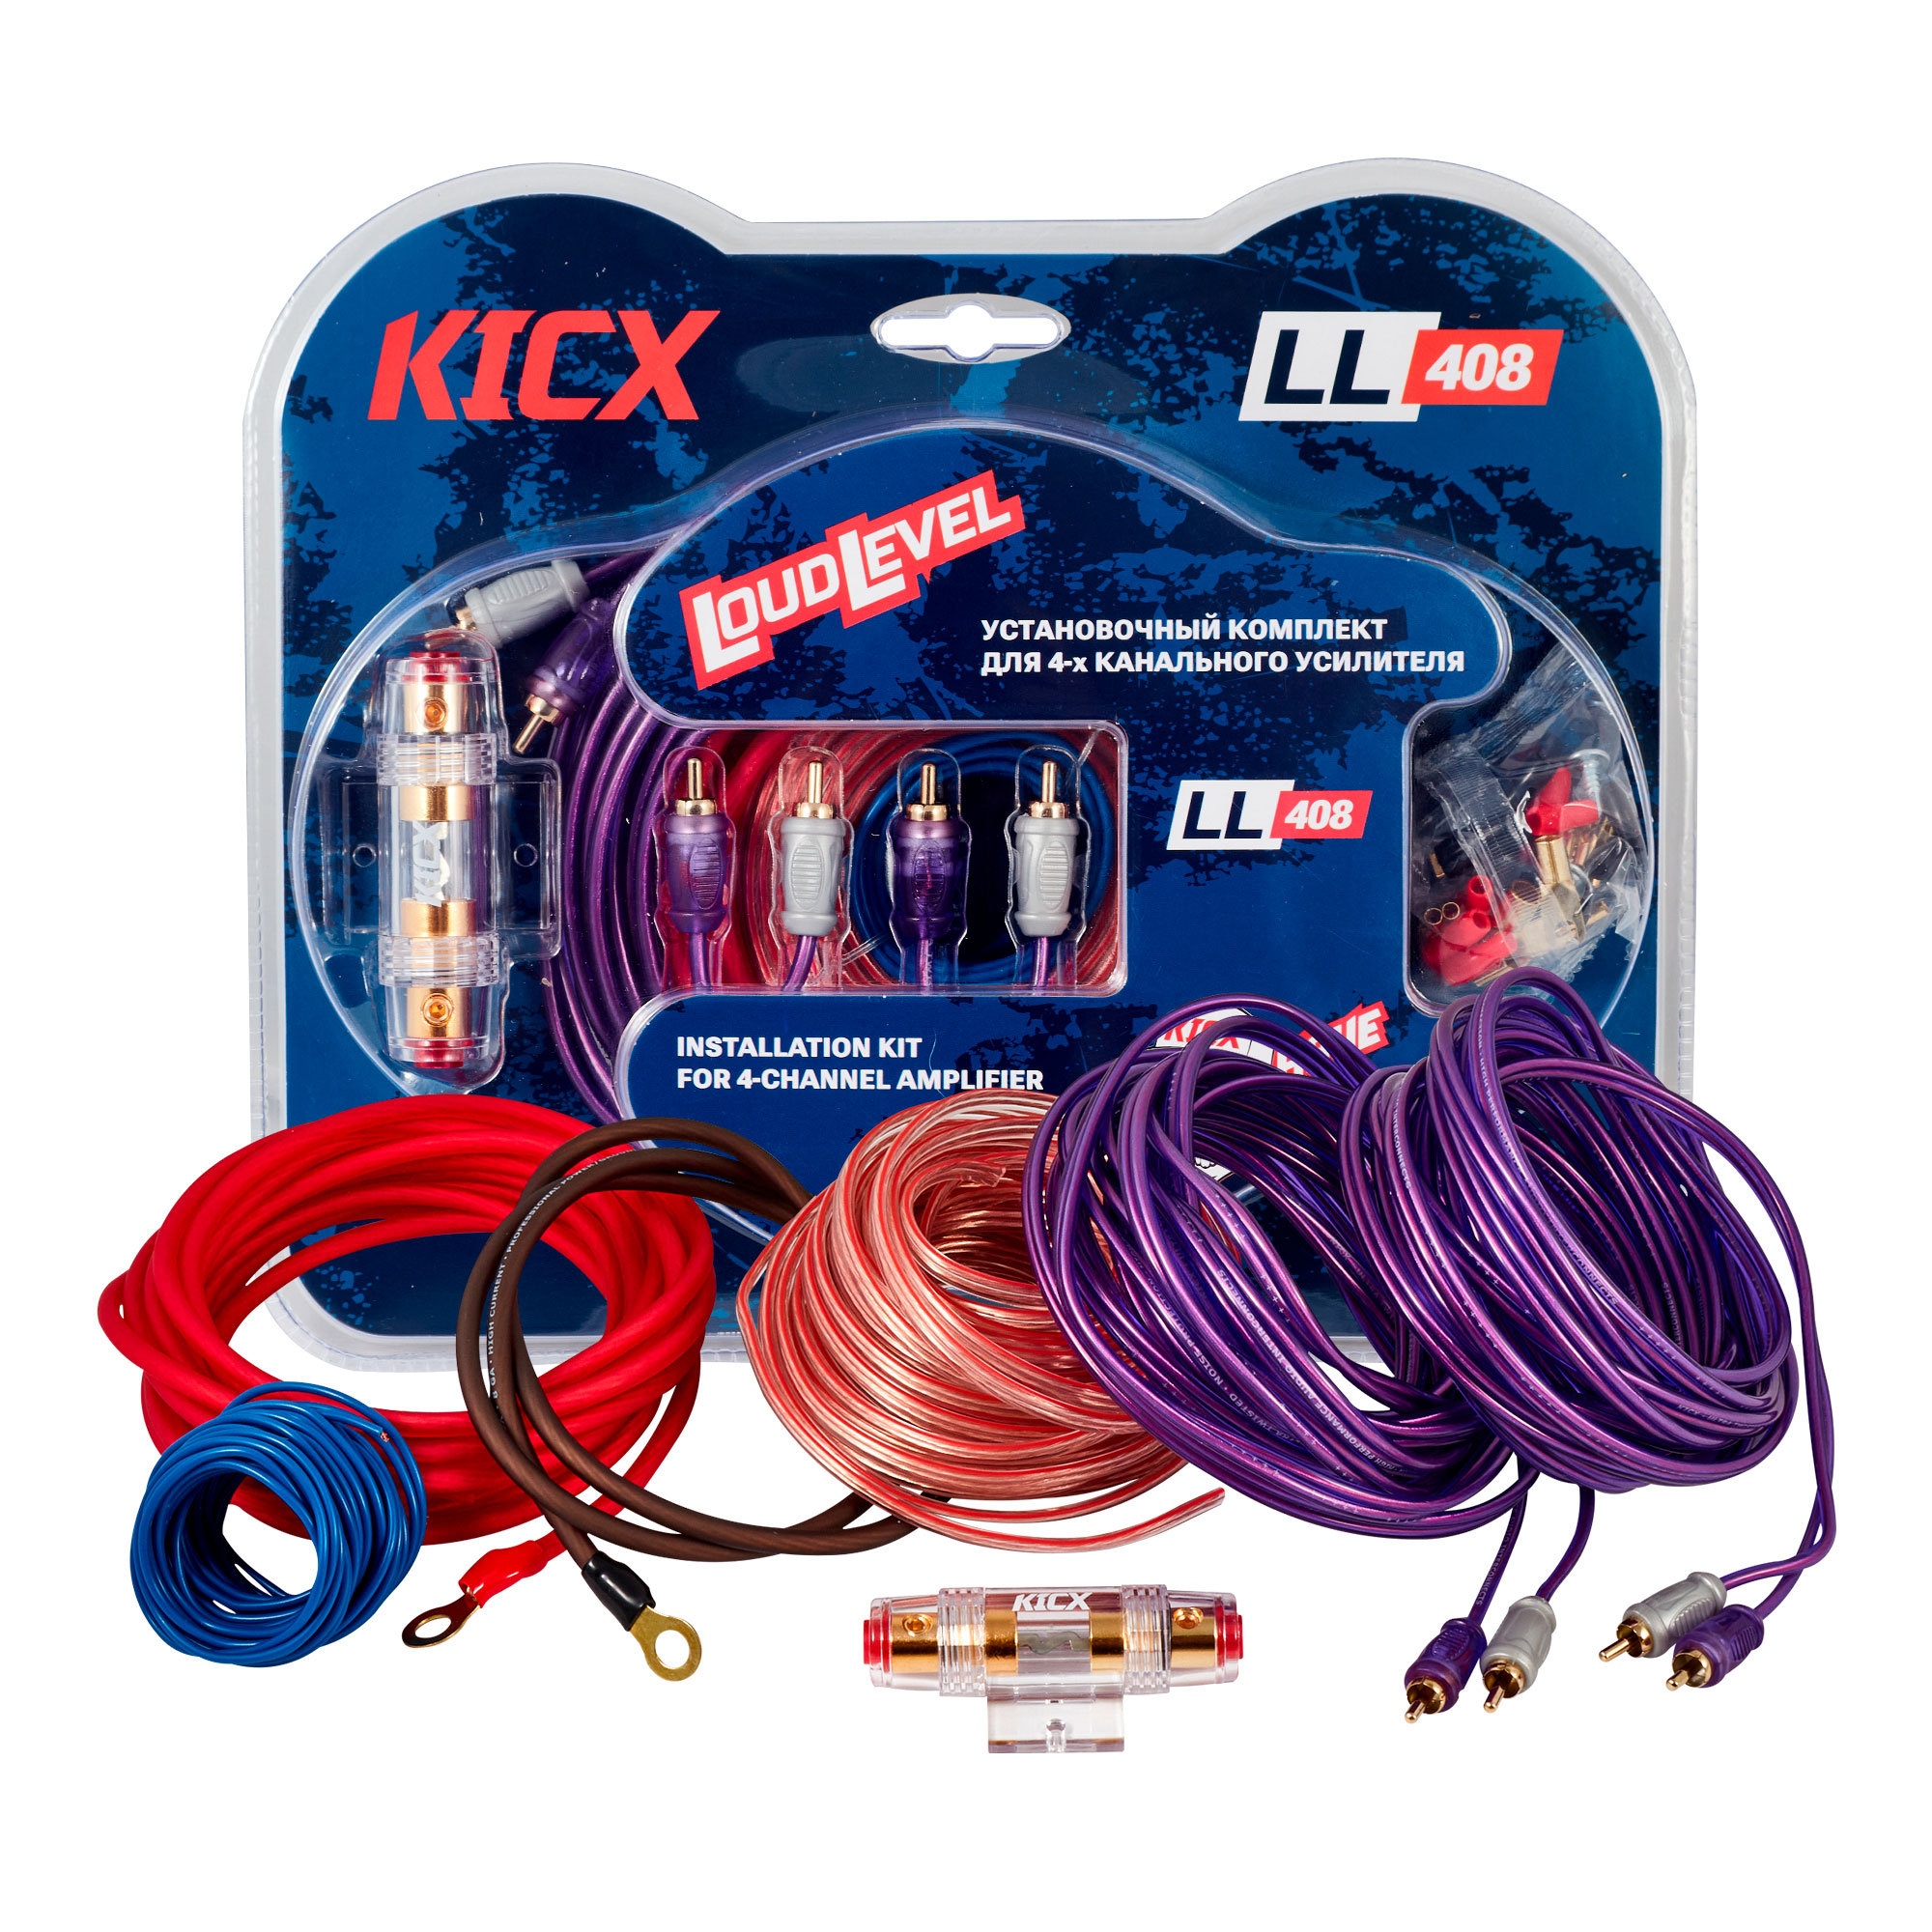 Kicx Kicx LL 408